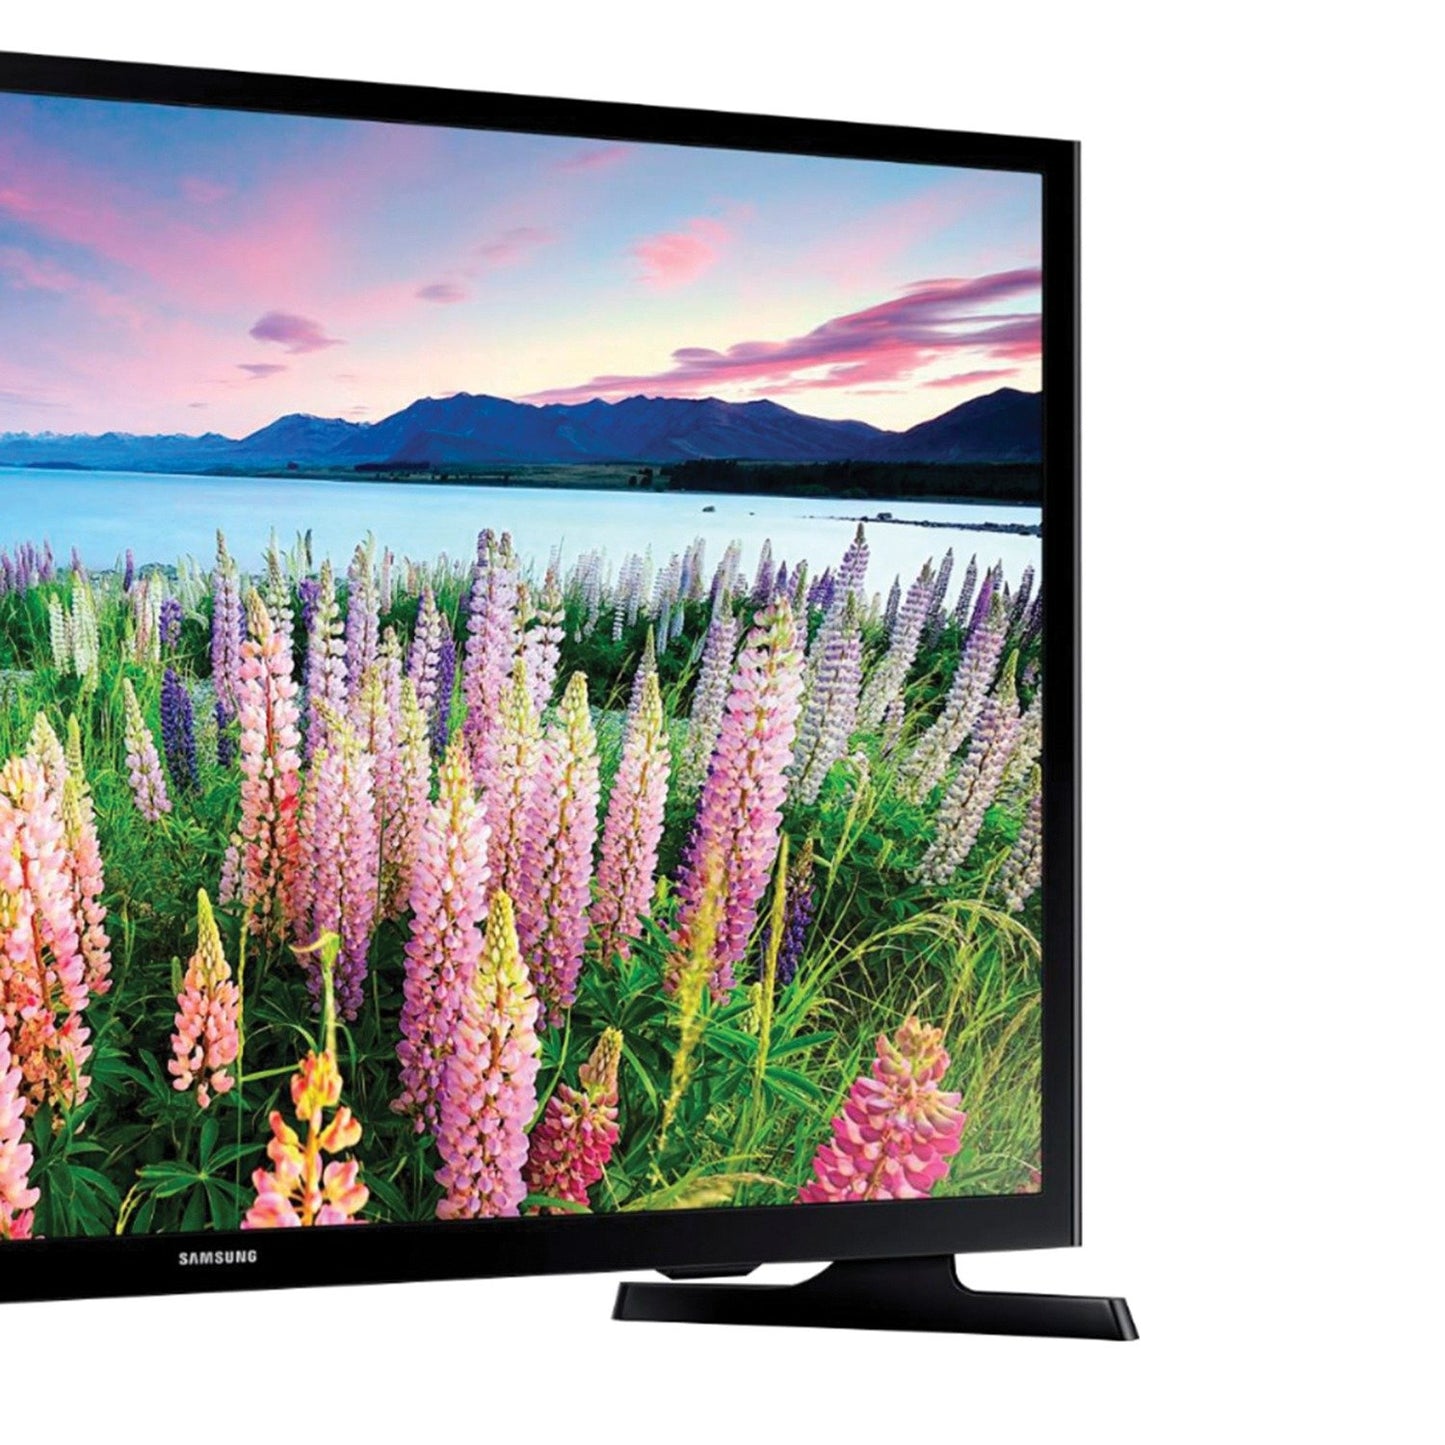 SAMSUNG UN40N5200AFXZA LED FHD Smart TV 1080p (40")